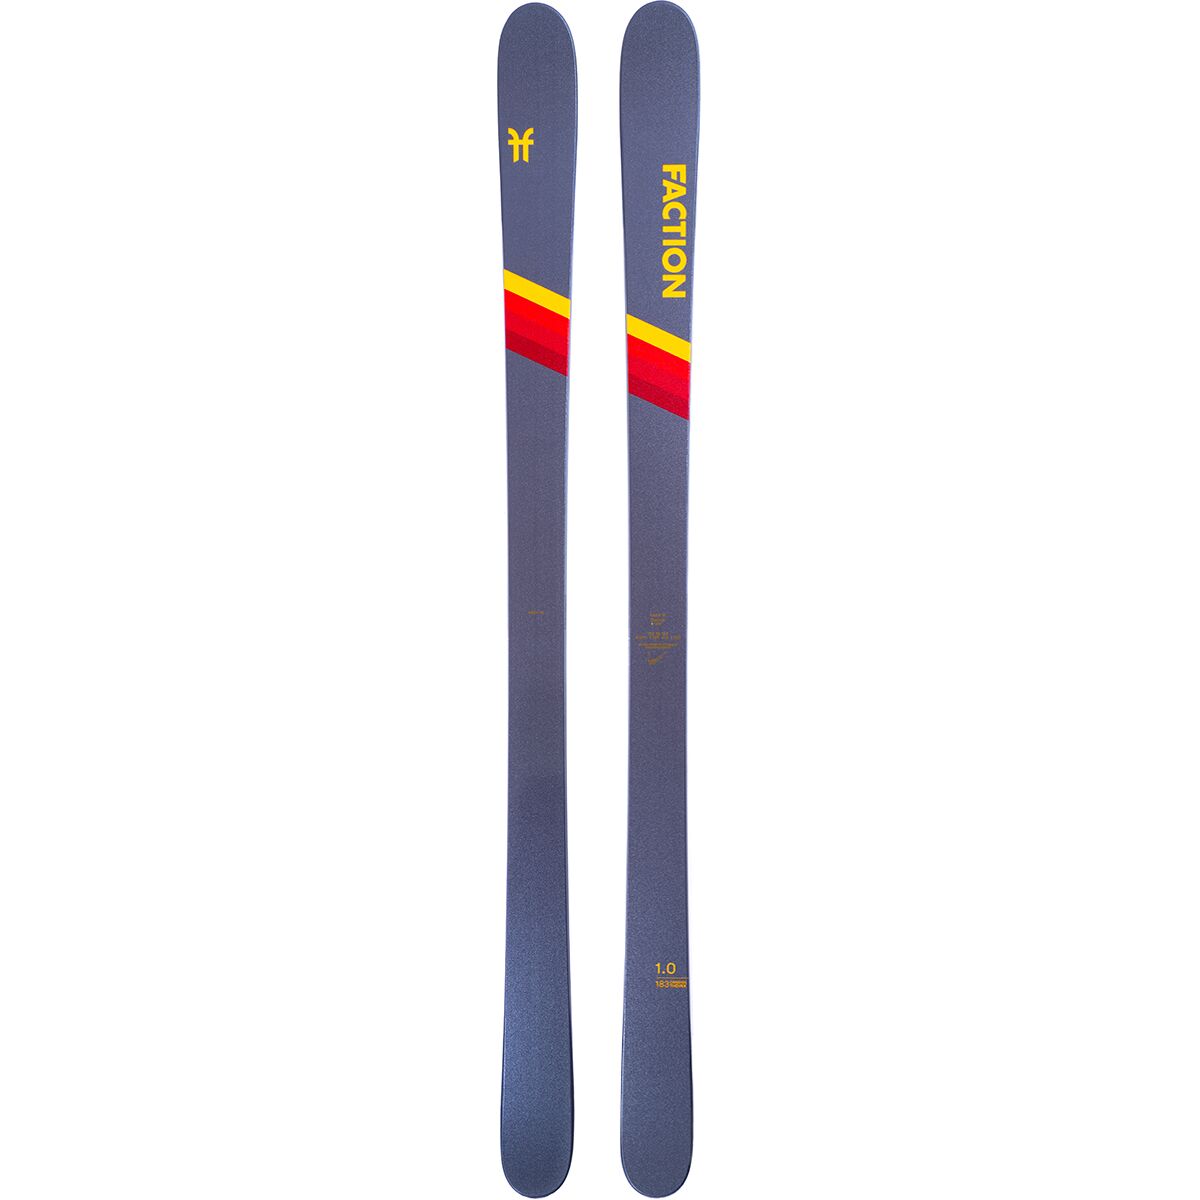 Faction Skis CT 1.0 Ski